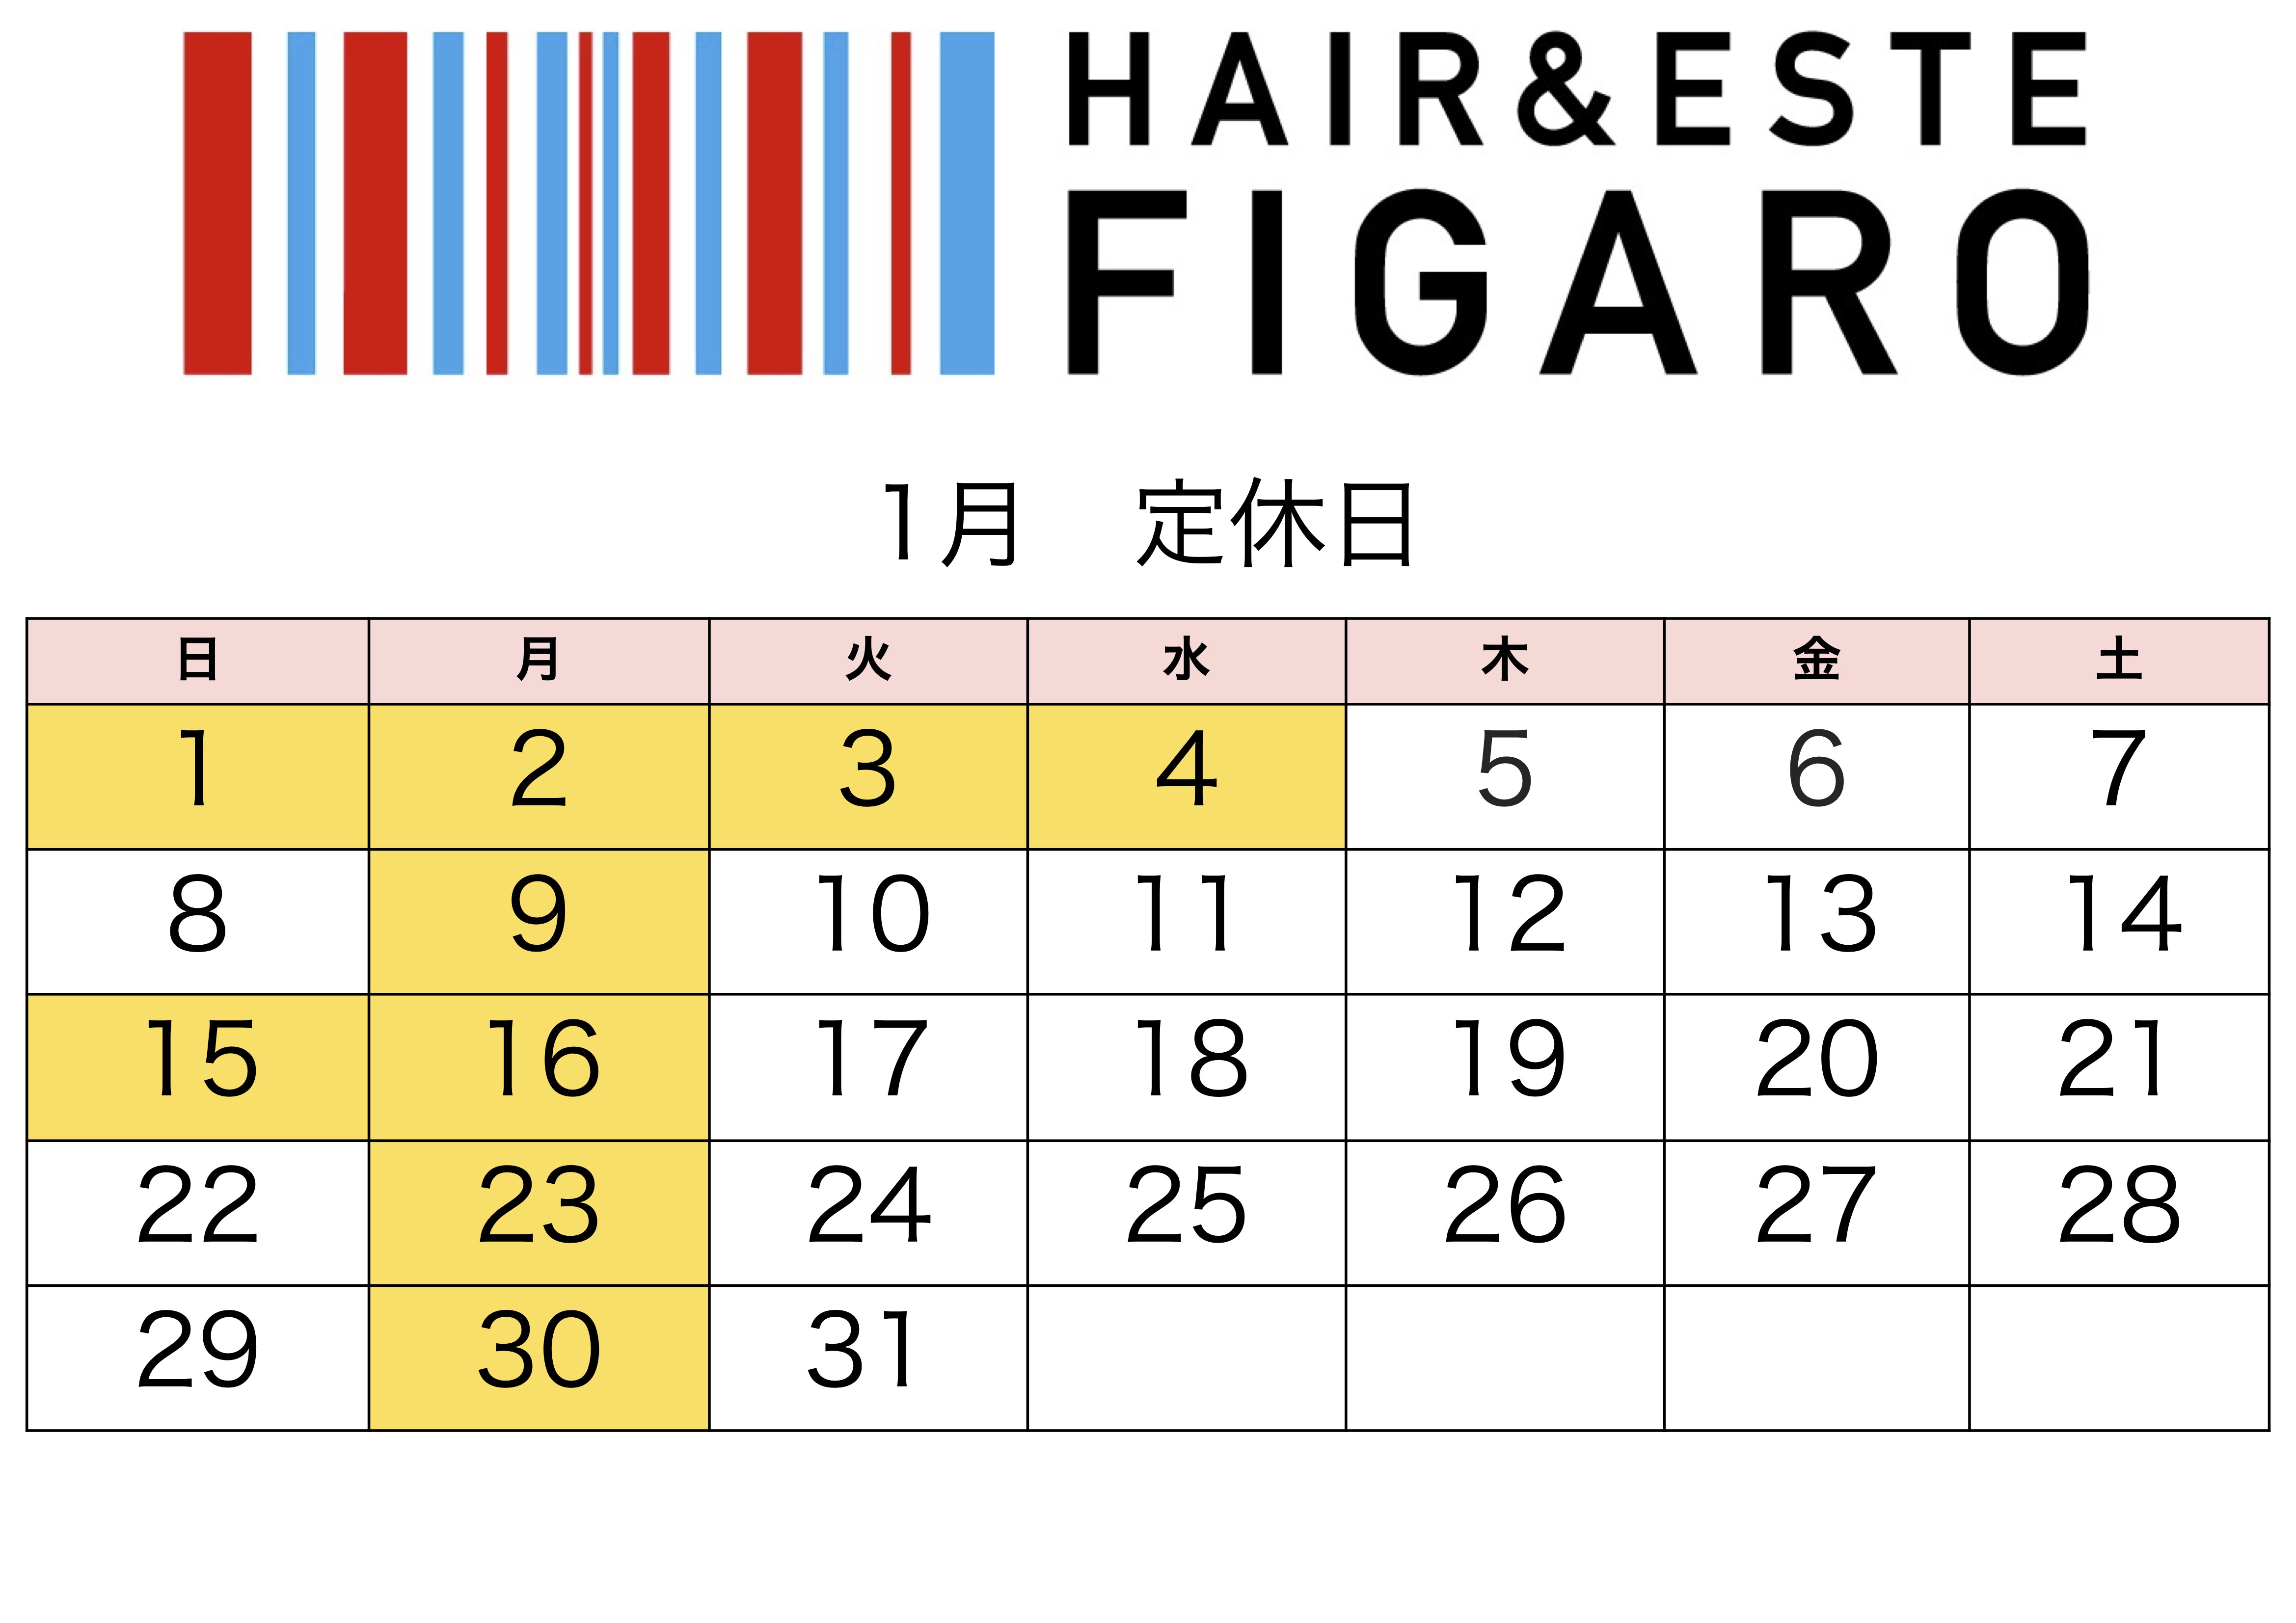 http://figaro-hair.com/blog/%EF%BC%92%EF%BC%90%EF%BC%92%EF%BC%93%E3%80%81%EF%BC%91.jpg